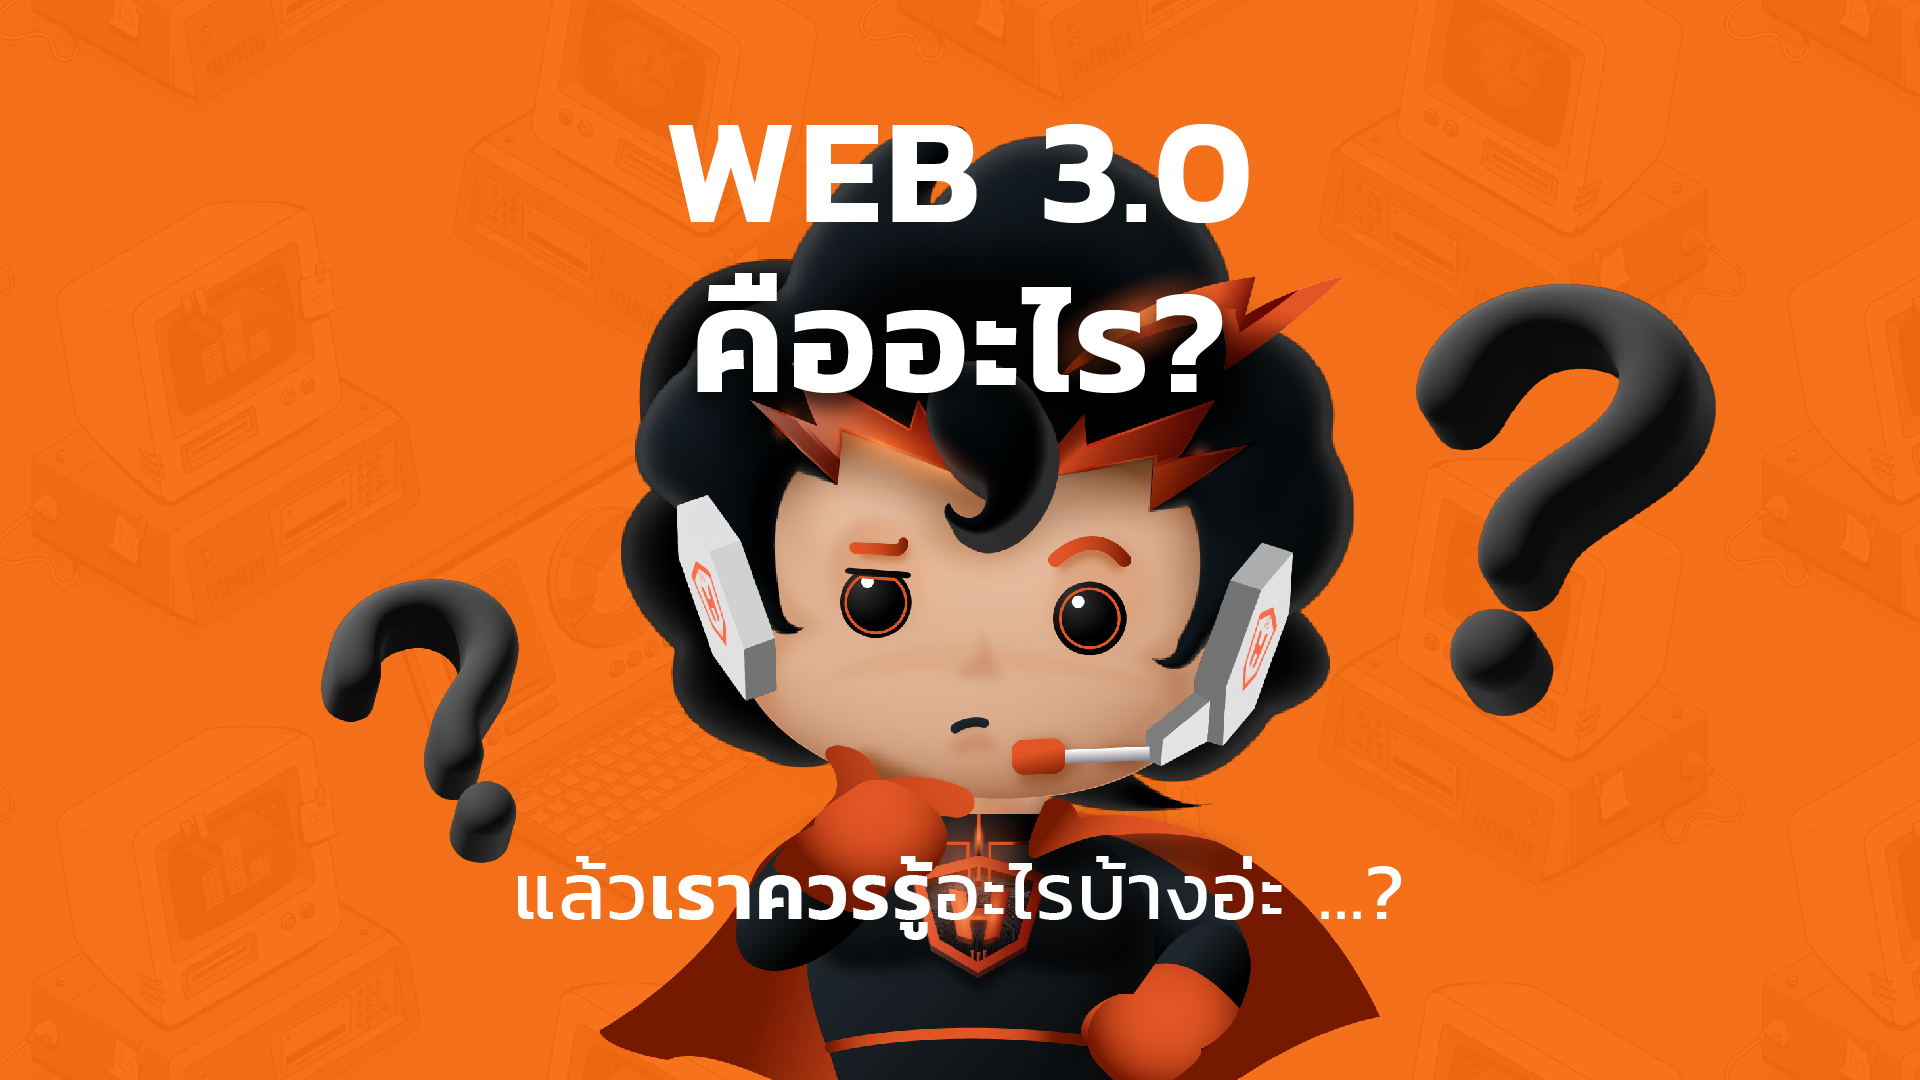 WEB 3.0 คืออะไร ? แล้วเราควรรู้อะไรบ้าง